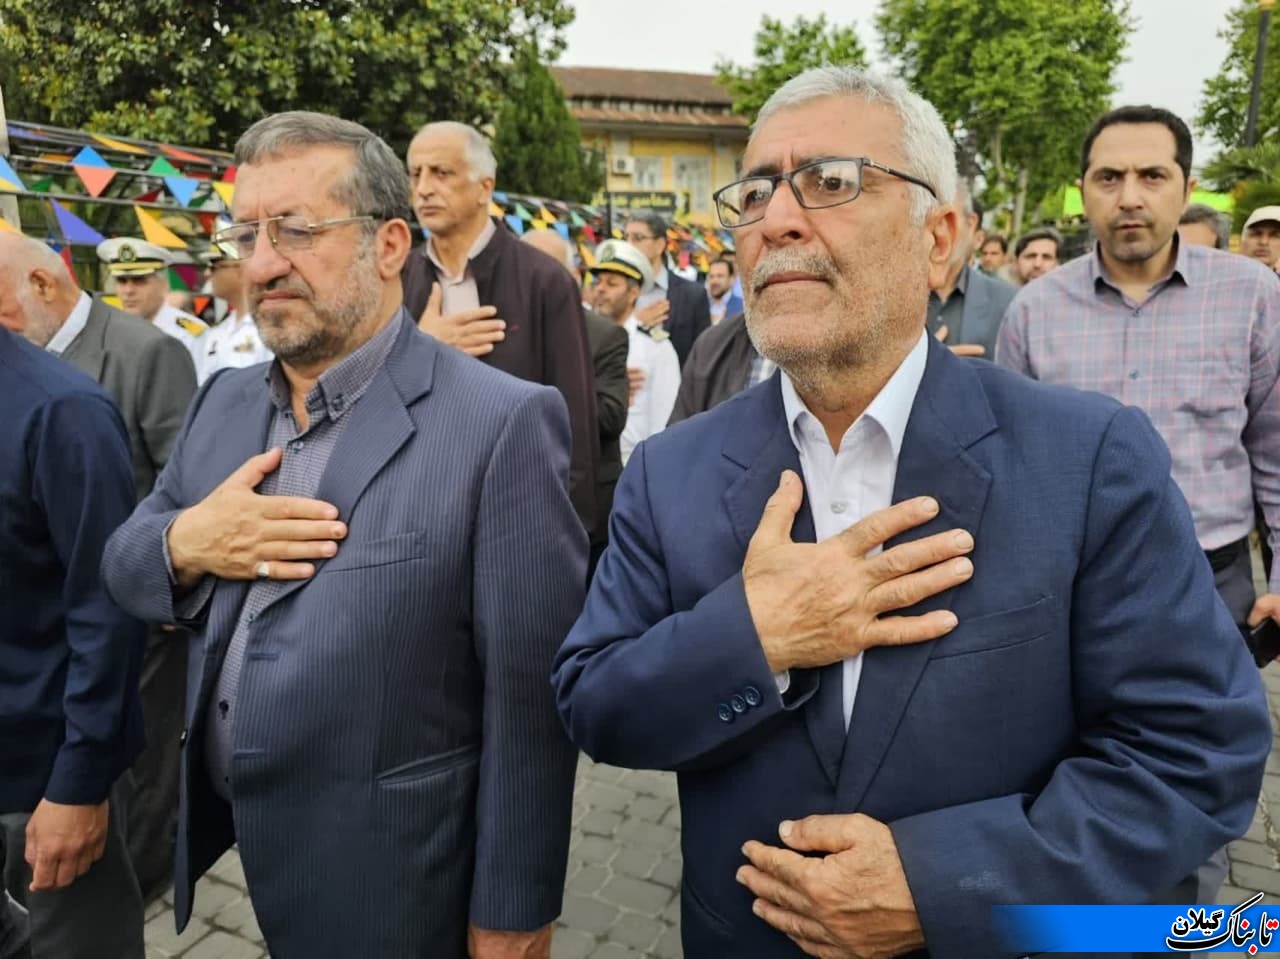 استاندار گیلان در مراسم یادبود شهید حجت کاروان واجاری شرکت کرد